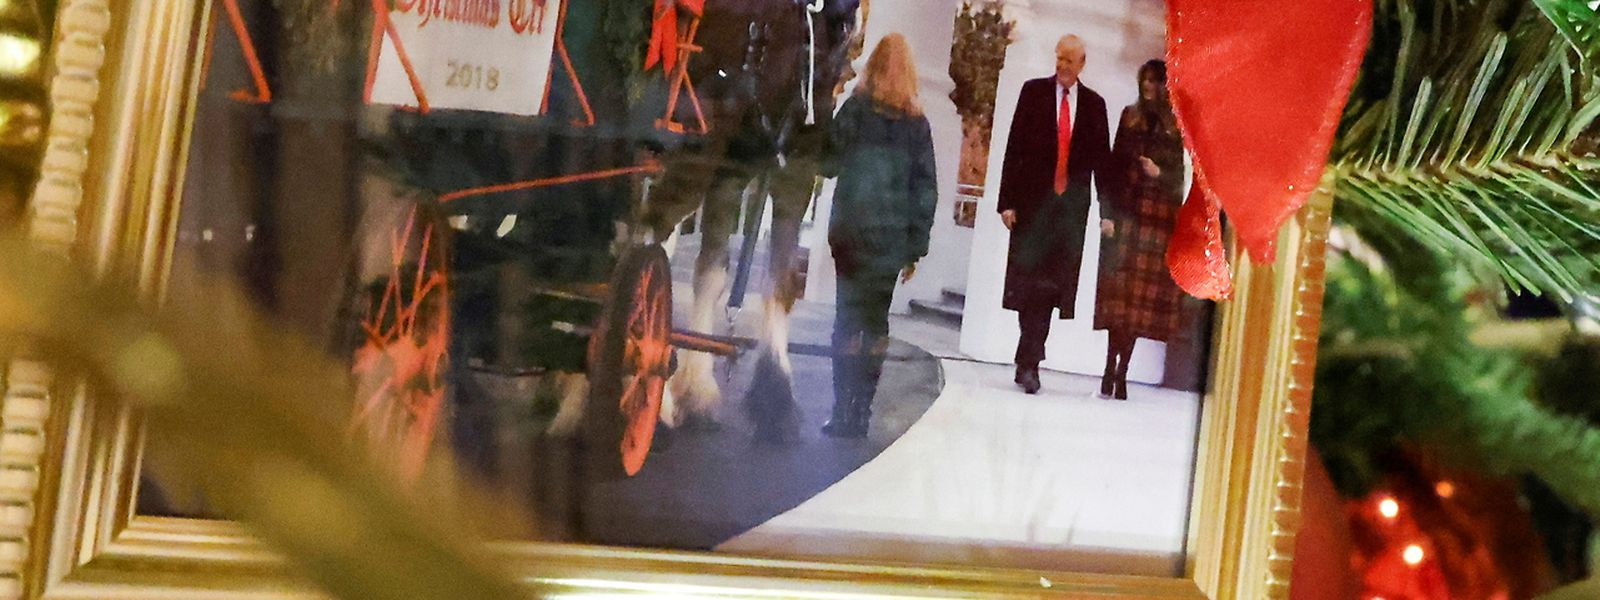 Gut versteckt ist das Foto von Ex-Präsident Donald Trump und seiner Frau.